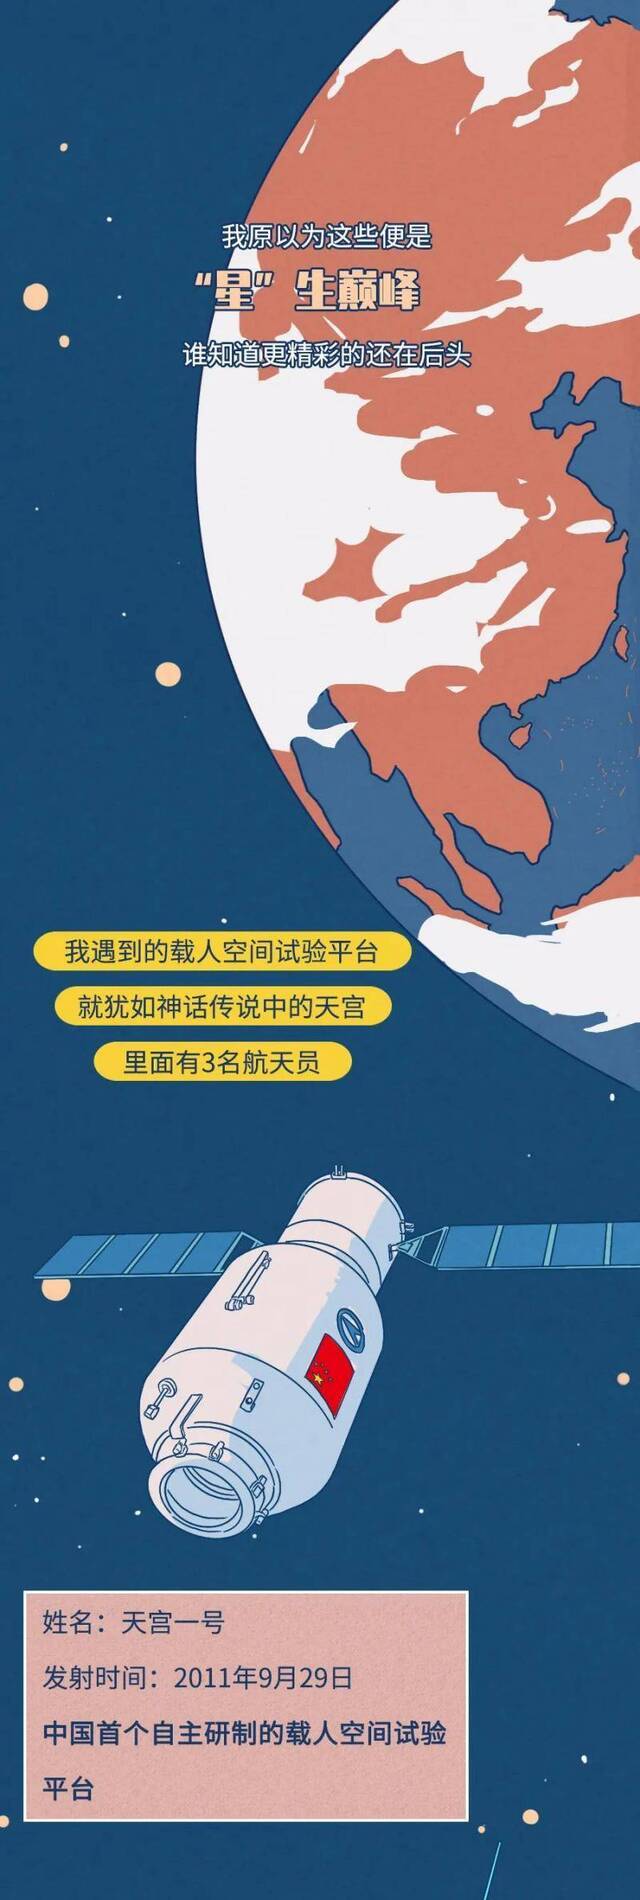 中国航天日 东方红漫游50年